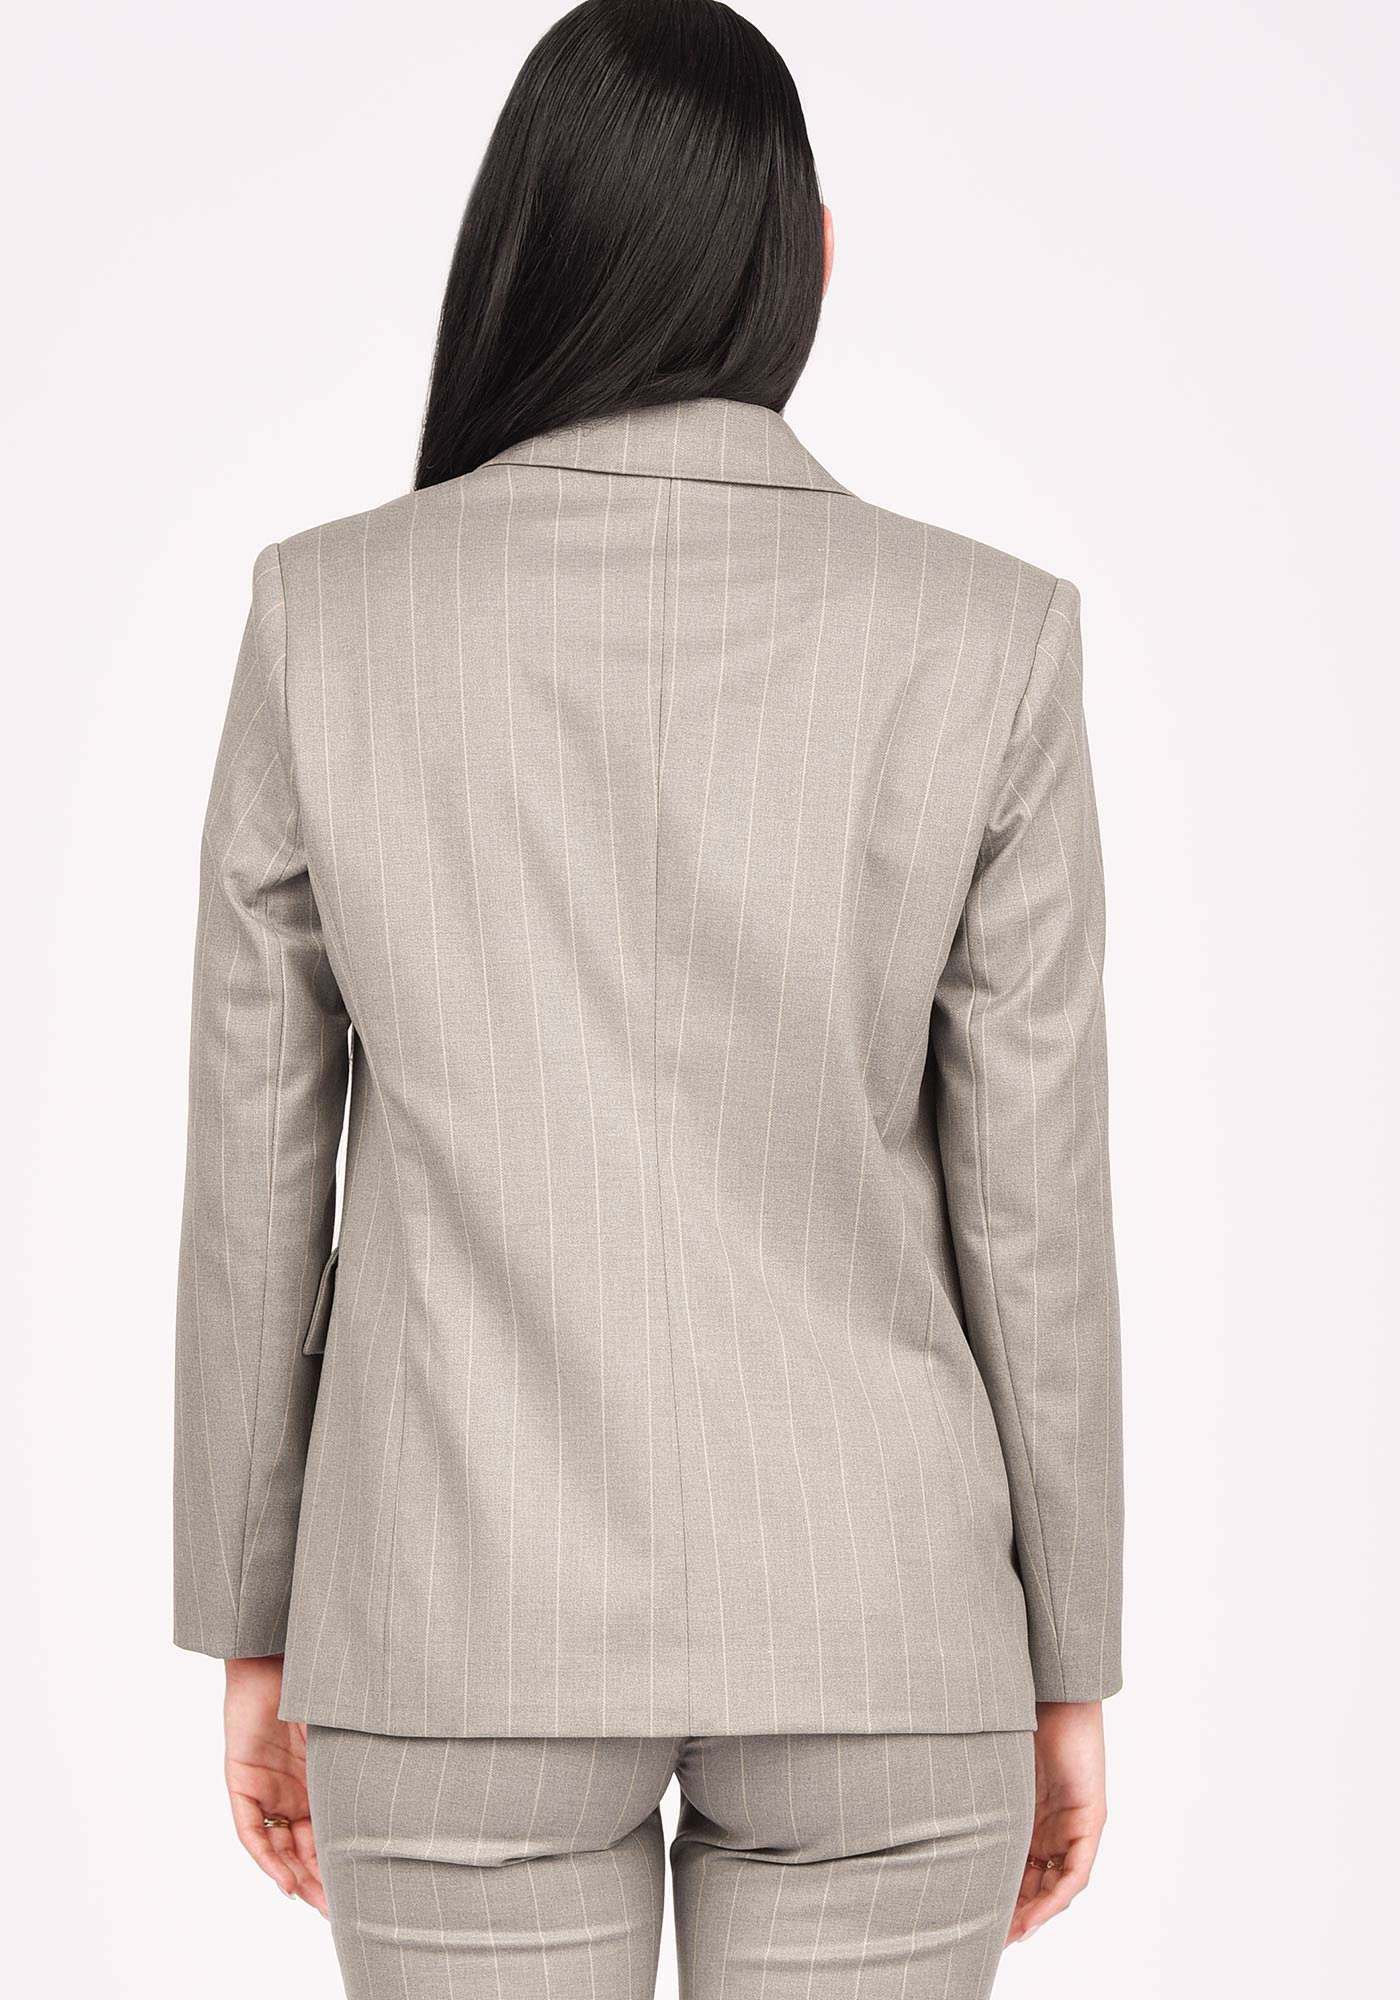 Single Breasted Oversized Women's Blazer in Pinstripe grey